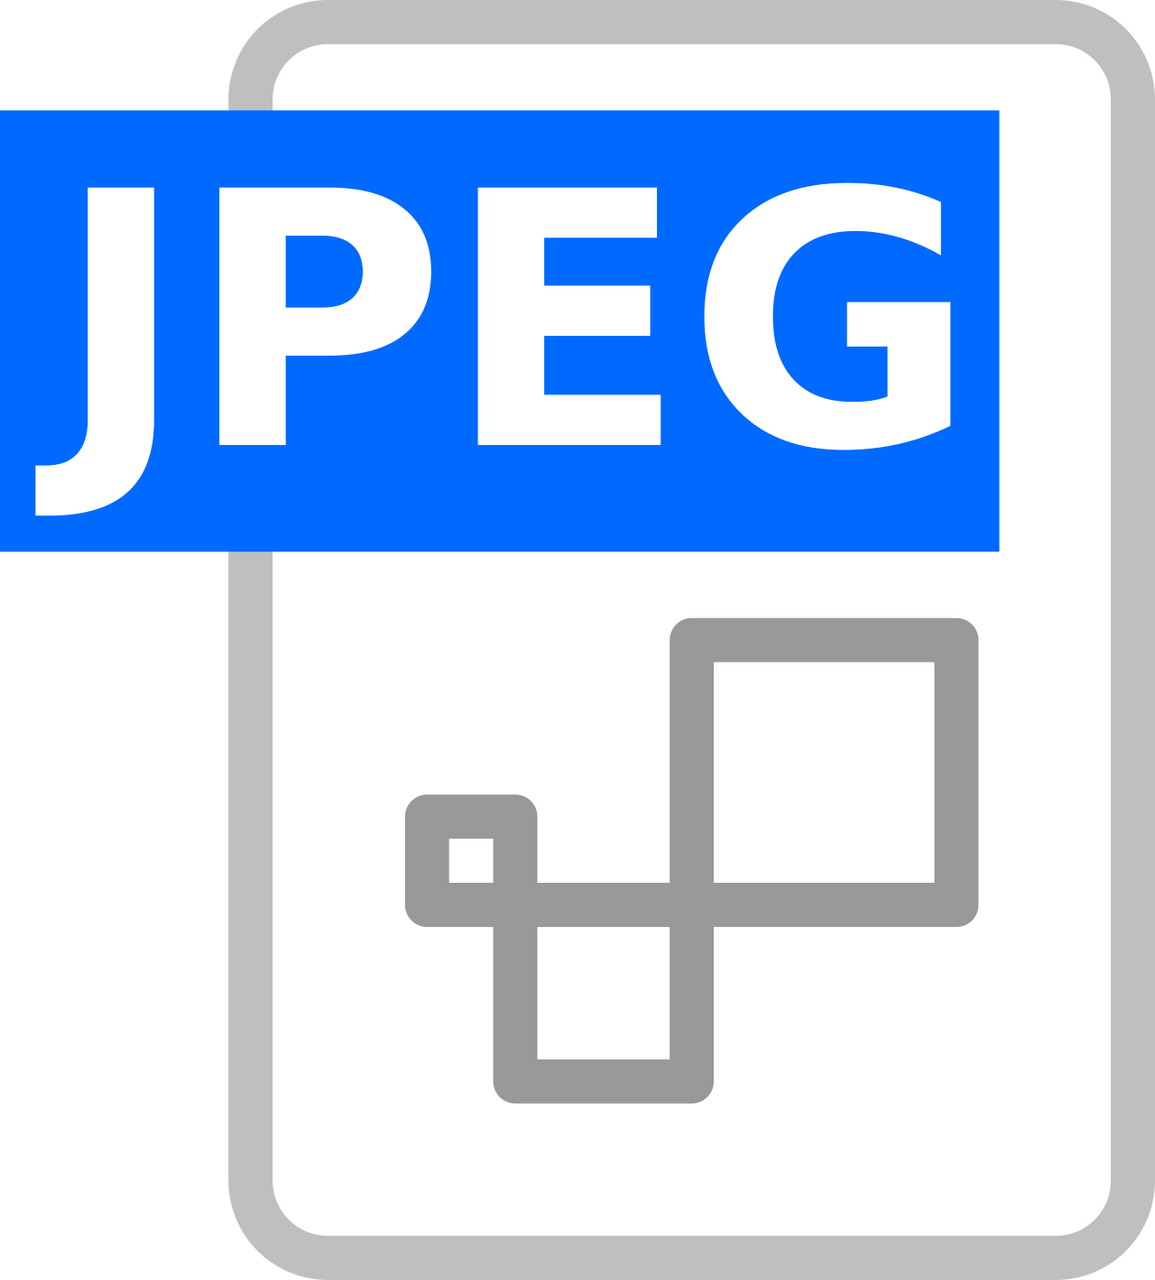 Vektorový obrázek, ilustrační klipart JPEG v rozlišení 1155x1280 pixelů zdarma ke stažení, Symboly vektor do vašich dokumentů